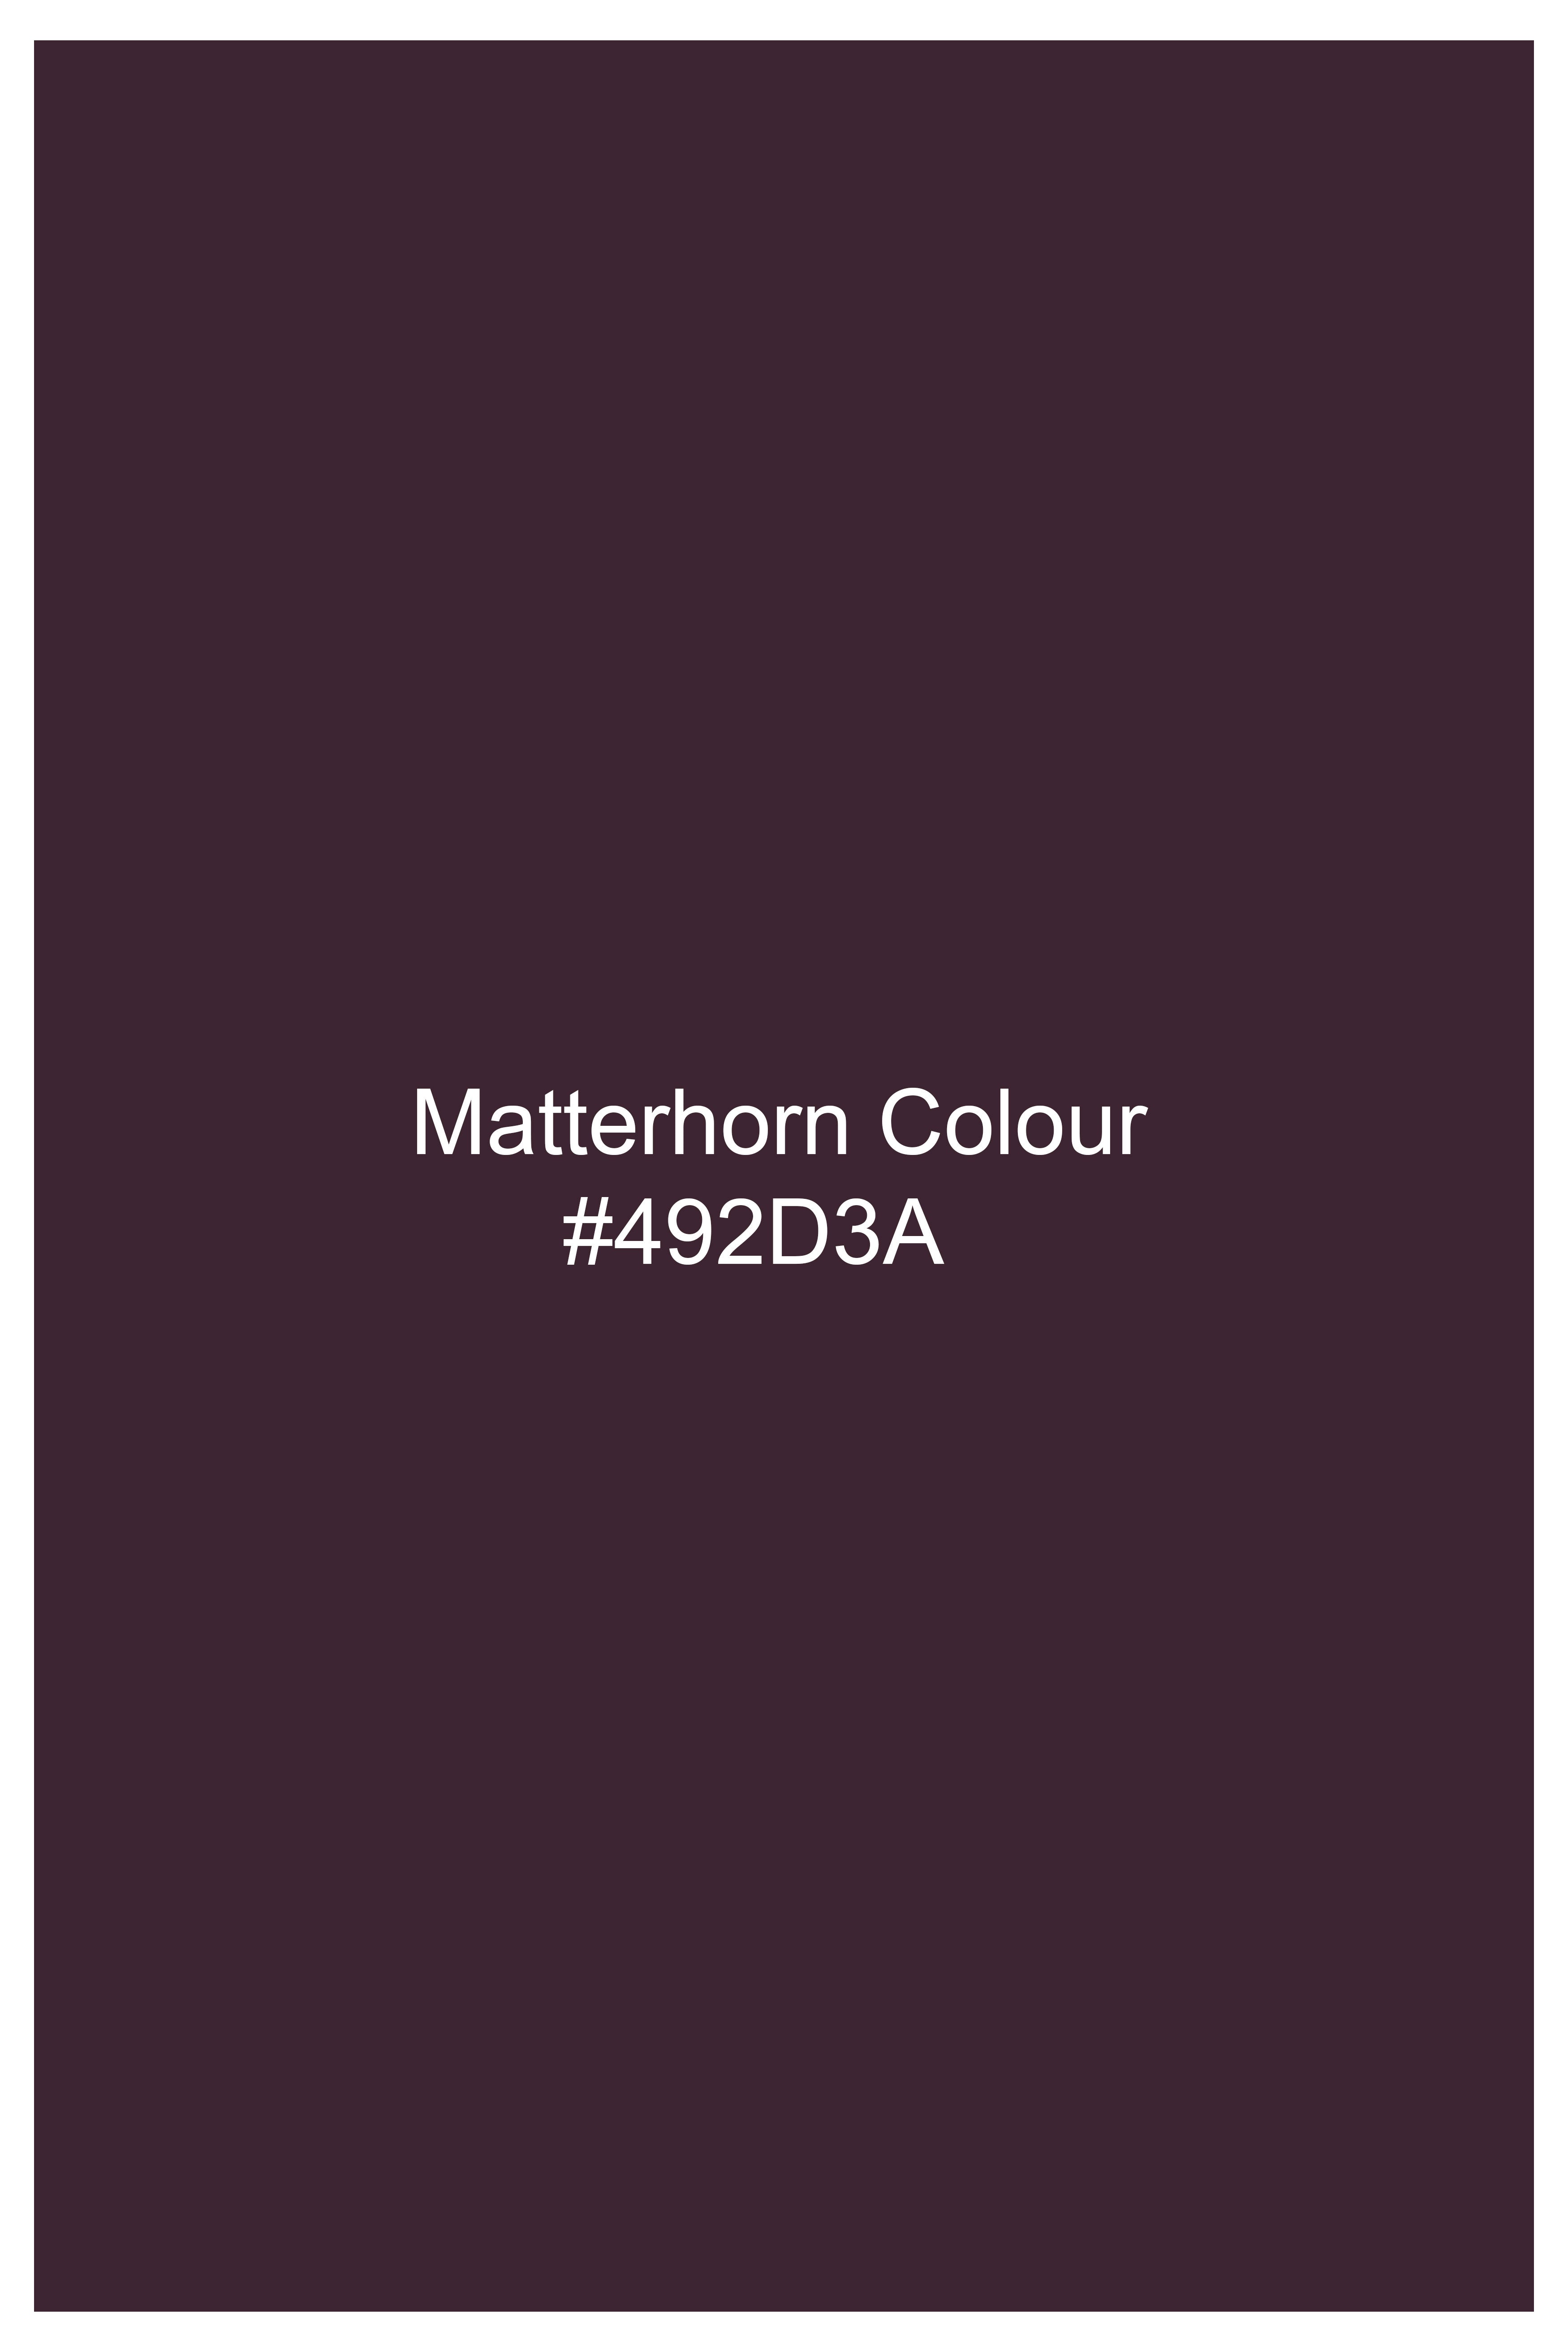 Matterhorn Maroon Wool Rich Designer Blazer BL2755-BG-D172-36, BL2755-BG-D172-38, BL2755-BG-D172-40, BL2755-BG-D172-42, BL2755-BG-D172-44, BL2755-BG-D172-46, BL2755-BG-D172-48, BL2755-BG-D172-50, BL2755-BG-D172-52, BL2755-BG-D172-54, BL2755-BG-D172-56, BL2755-BG-D172-58, BL2755-BG-D172-60